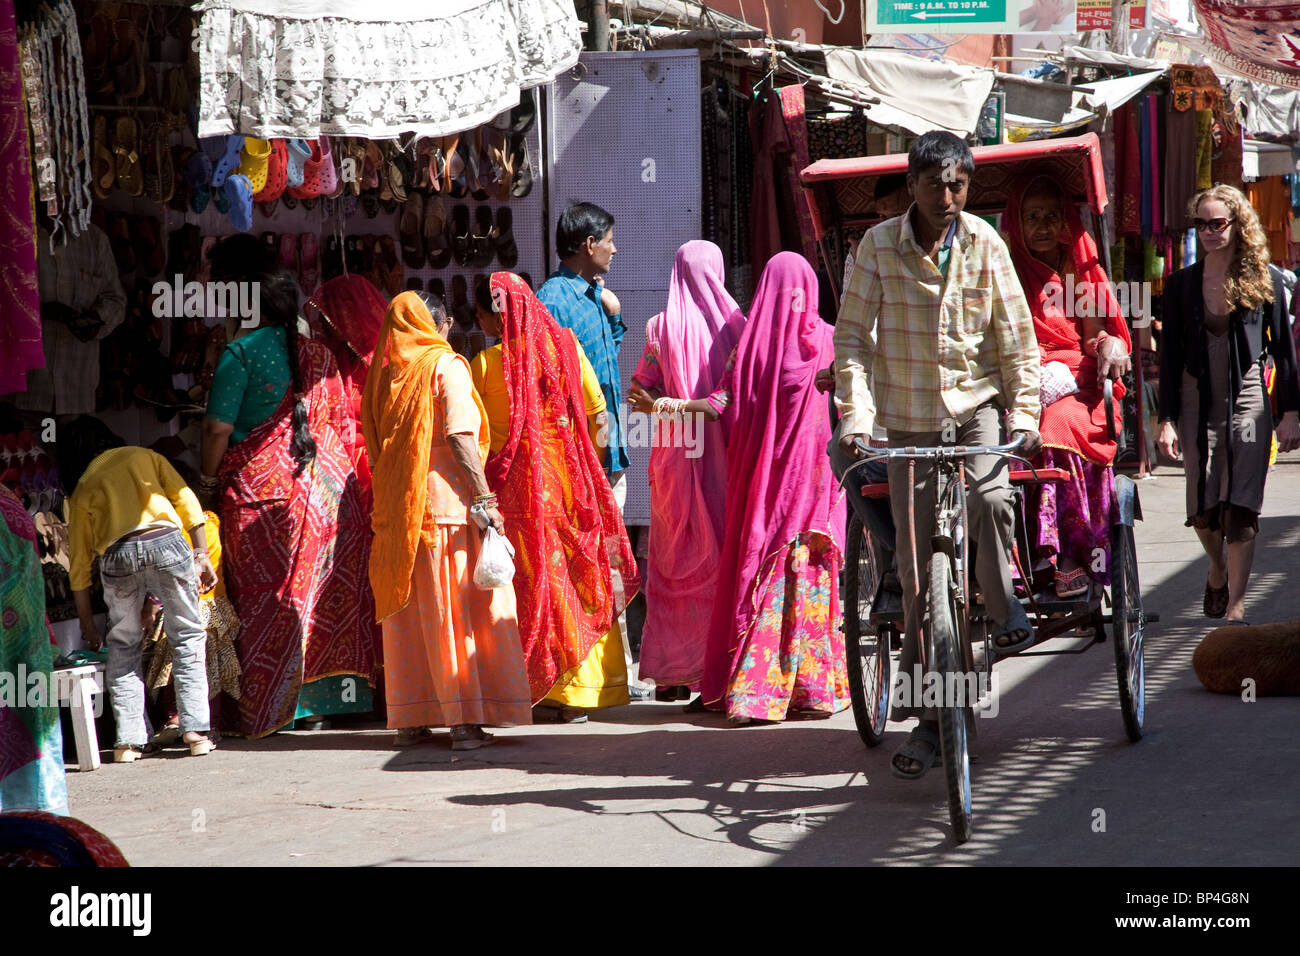 Sadar Bazaar. Pushkar. India Stock Photo - Alamy